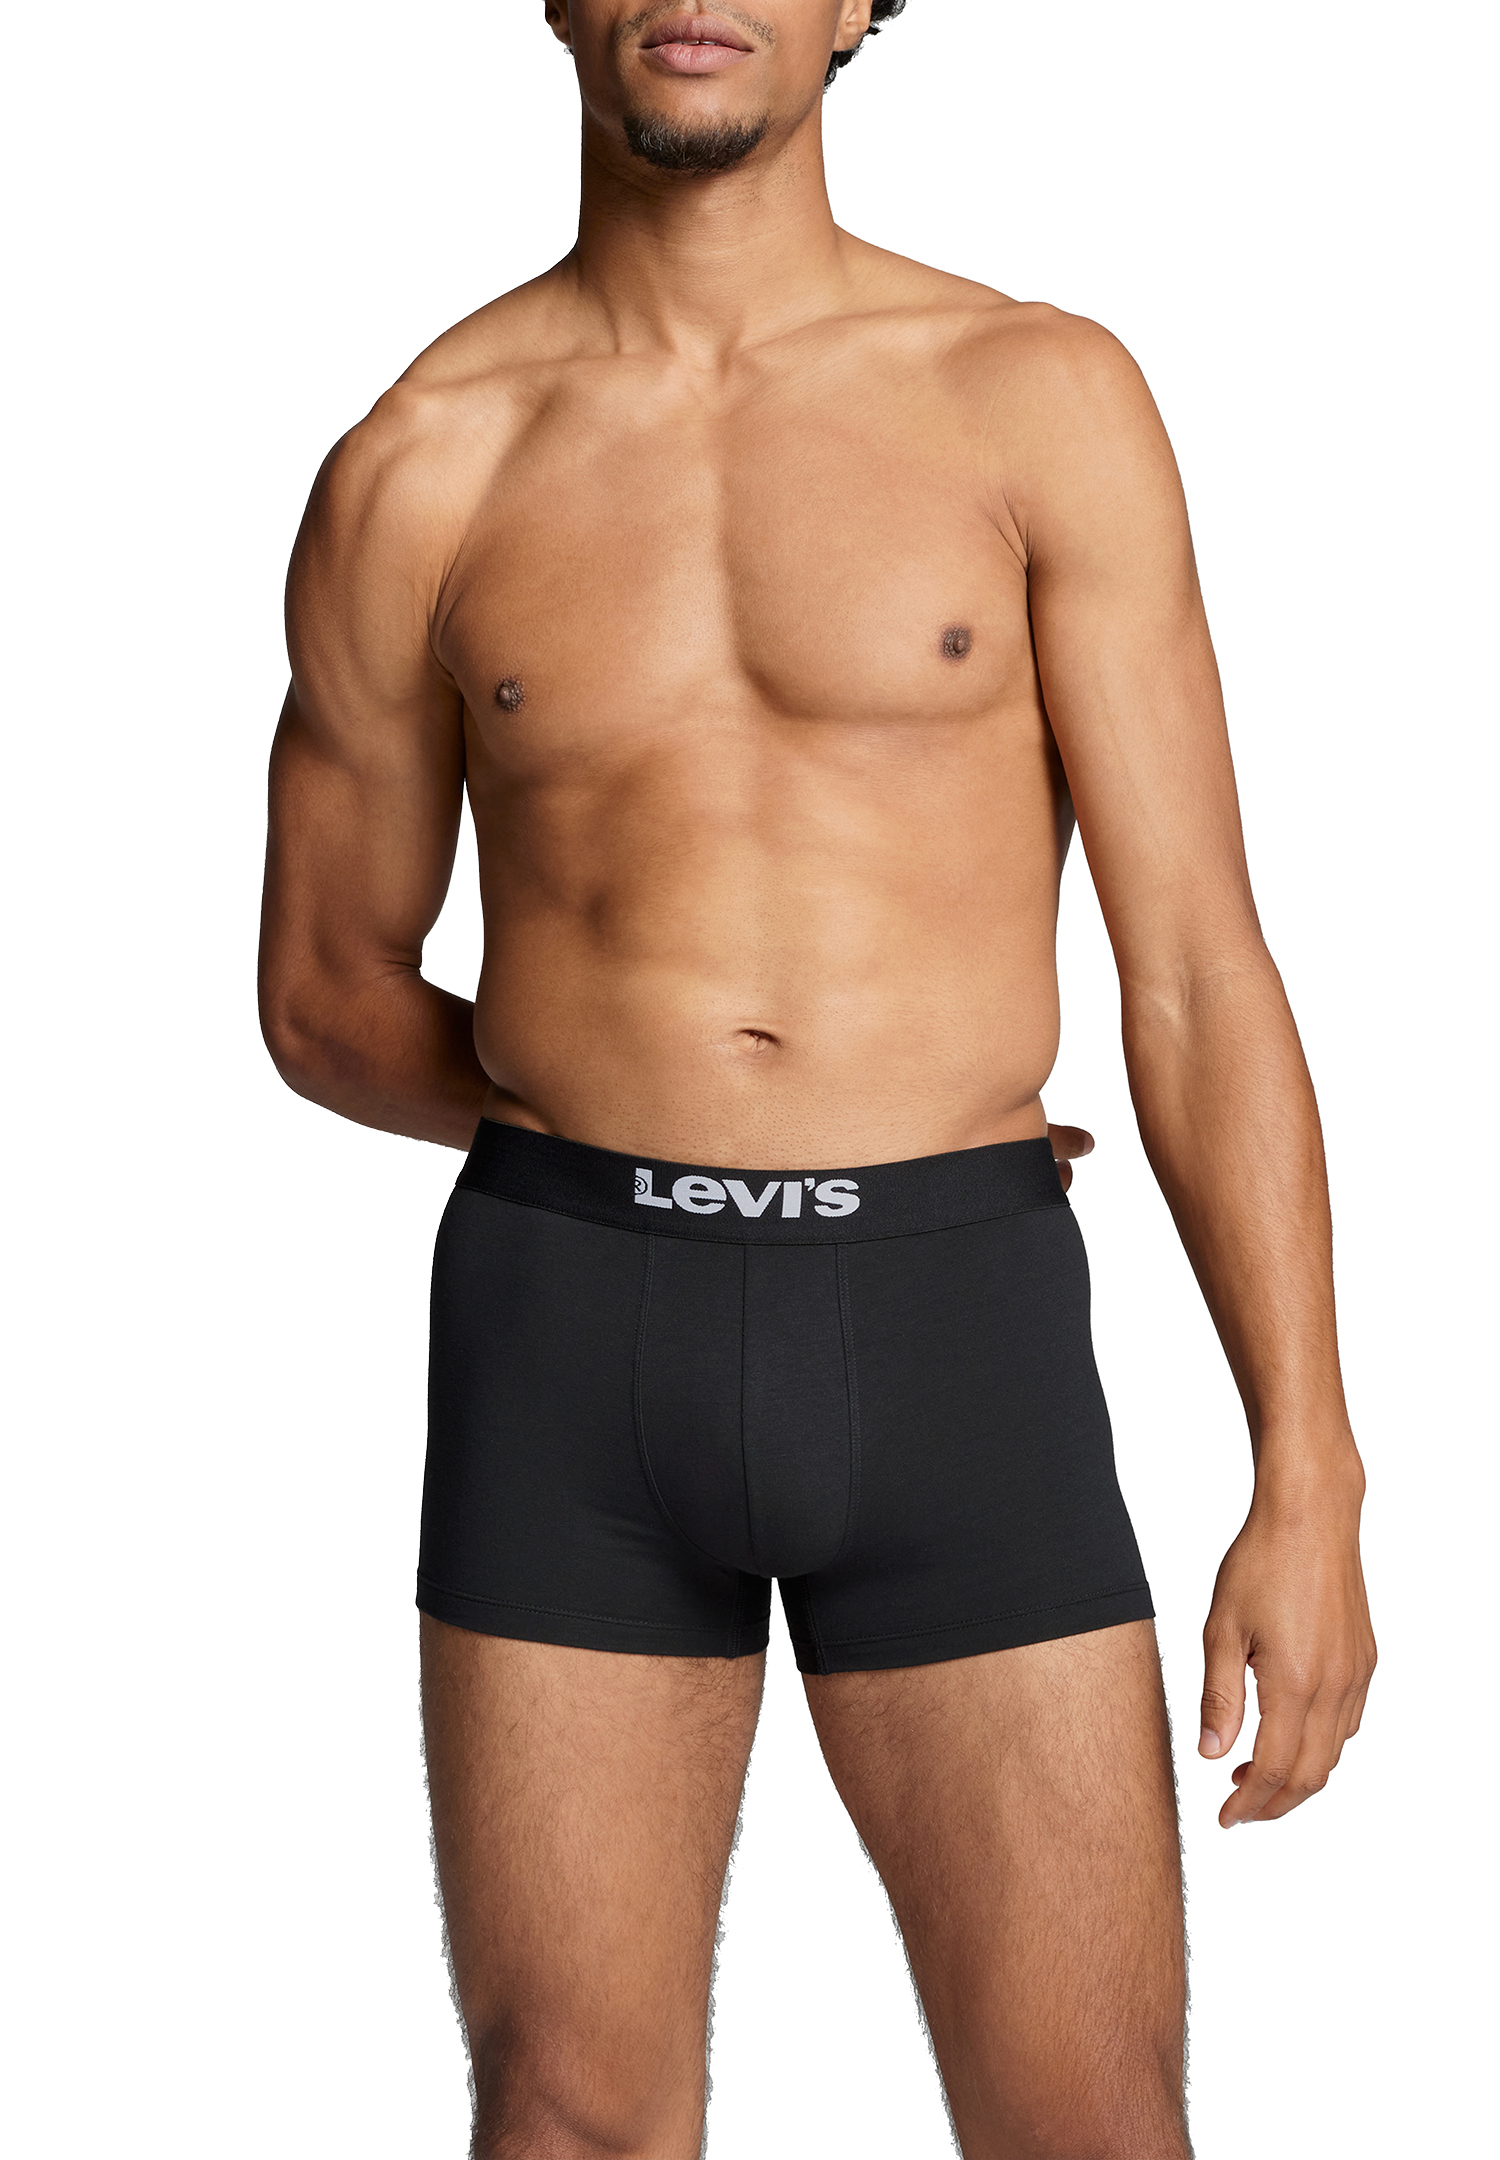 Levi's Solid Basic Herren Boxershorts Unterwäsche aus Bio-Baumwolle im 2er Pack